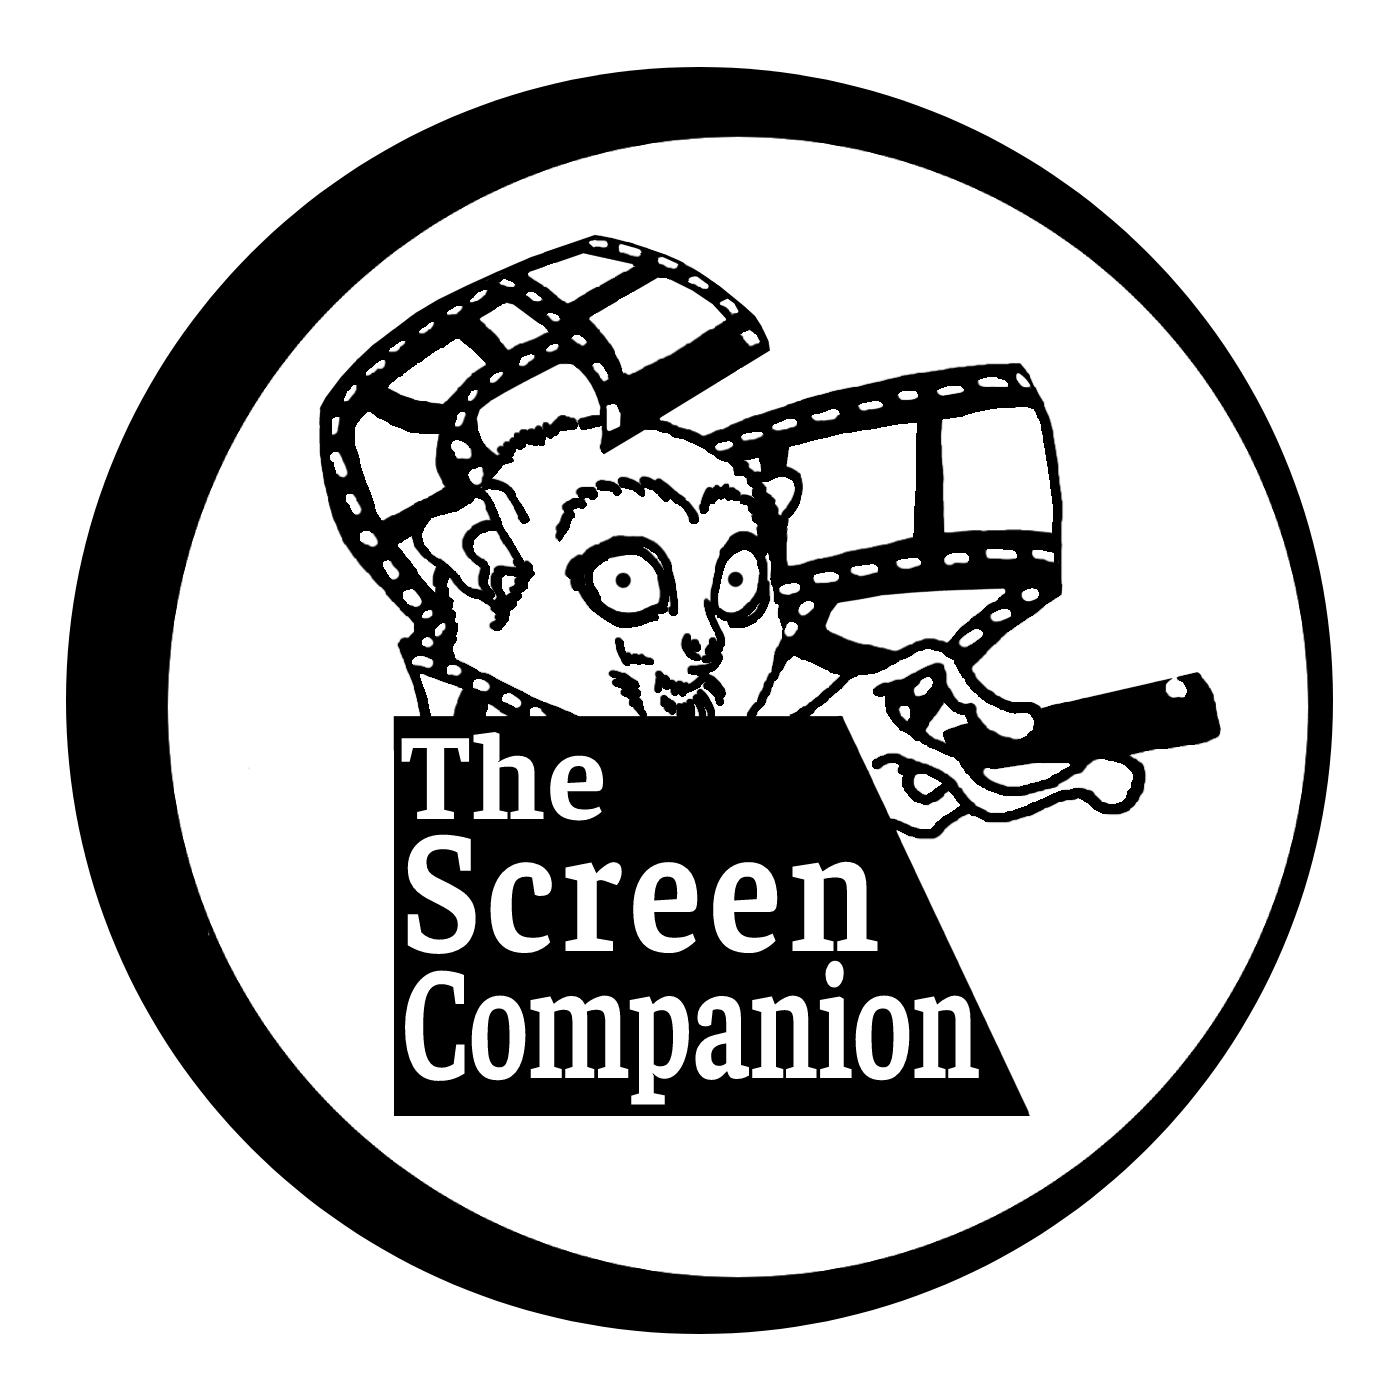 The Screen Companion